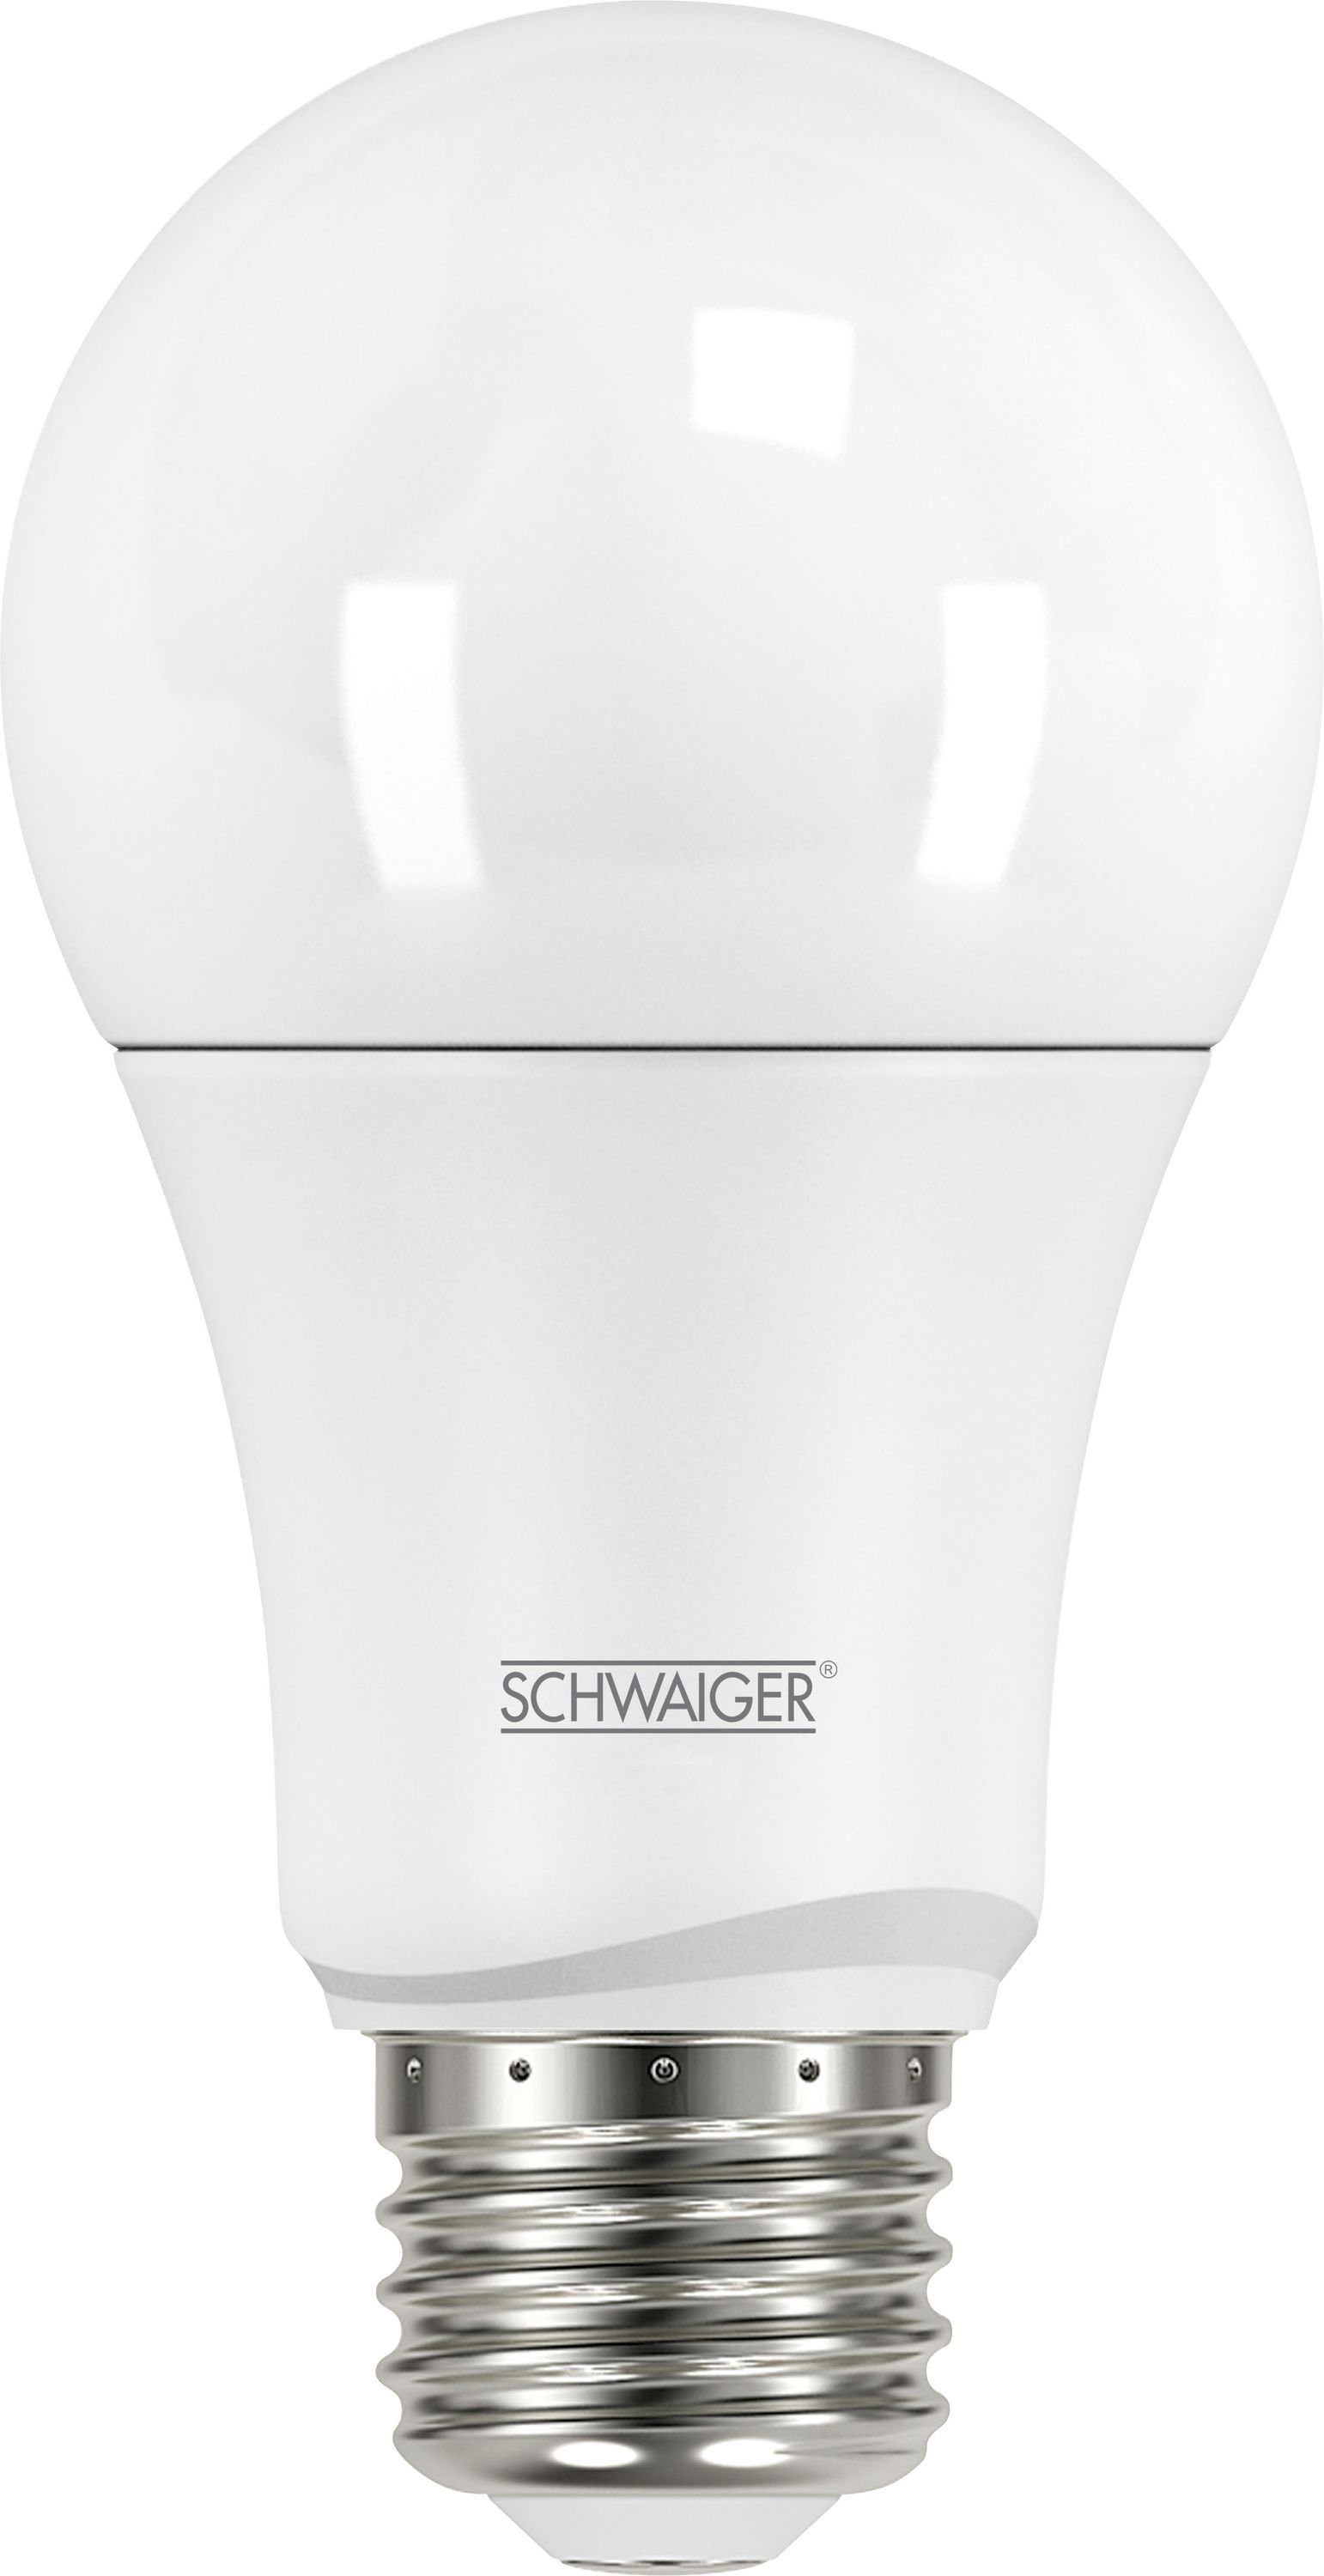 Schwaiger Starter-Set, Smart-Home Einbruchschutz/Licht Set 716122